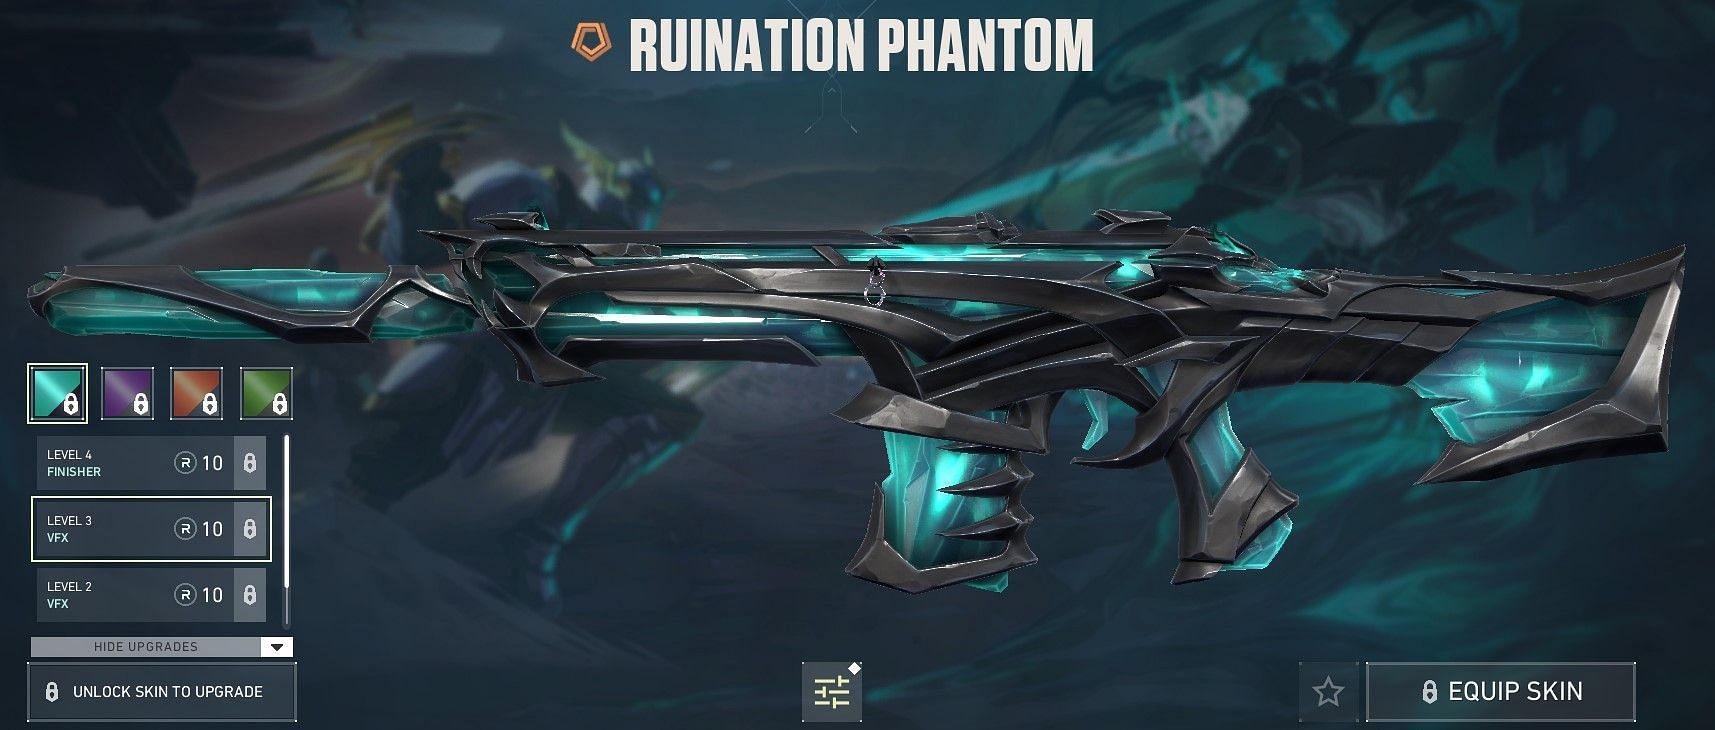 Ruination Phantom (Image via Riot Games)